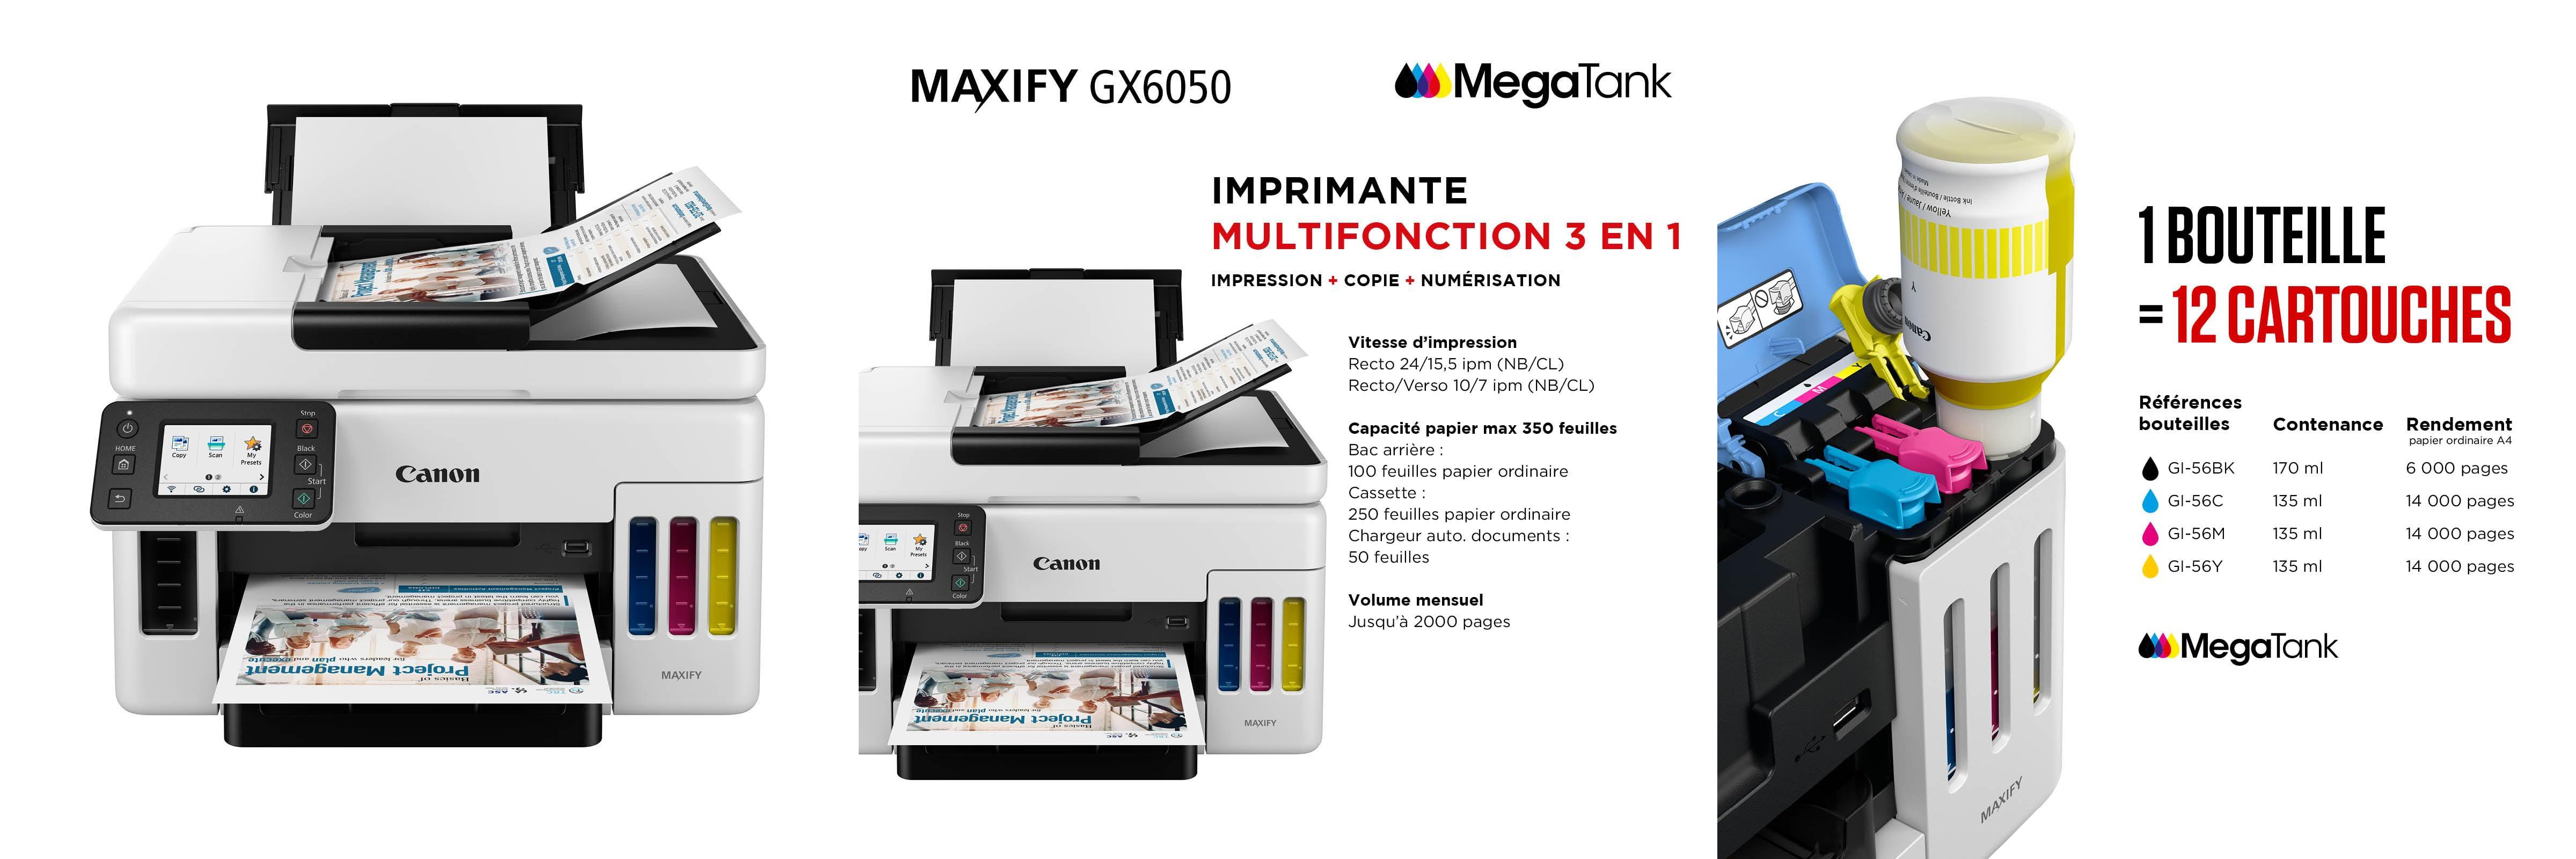 La Canon Impresora de inyección de tinta MAXIFY GX6050: La solución multifuncional para tus necesidades de impresión en color Wi-Fi